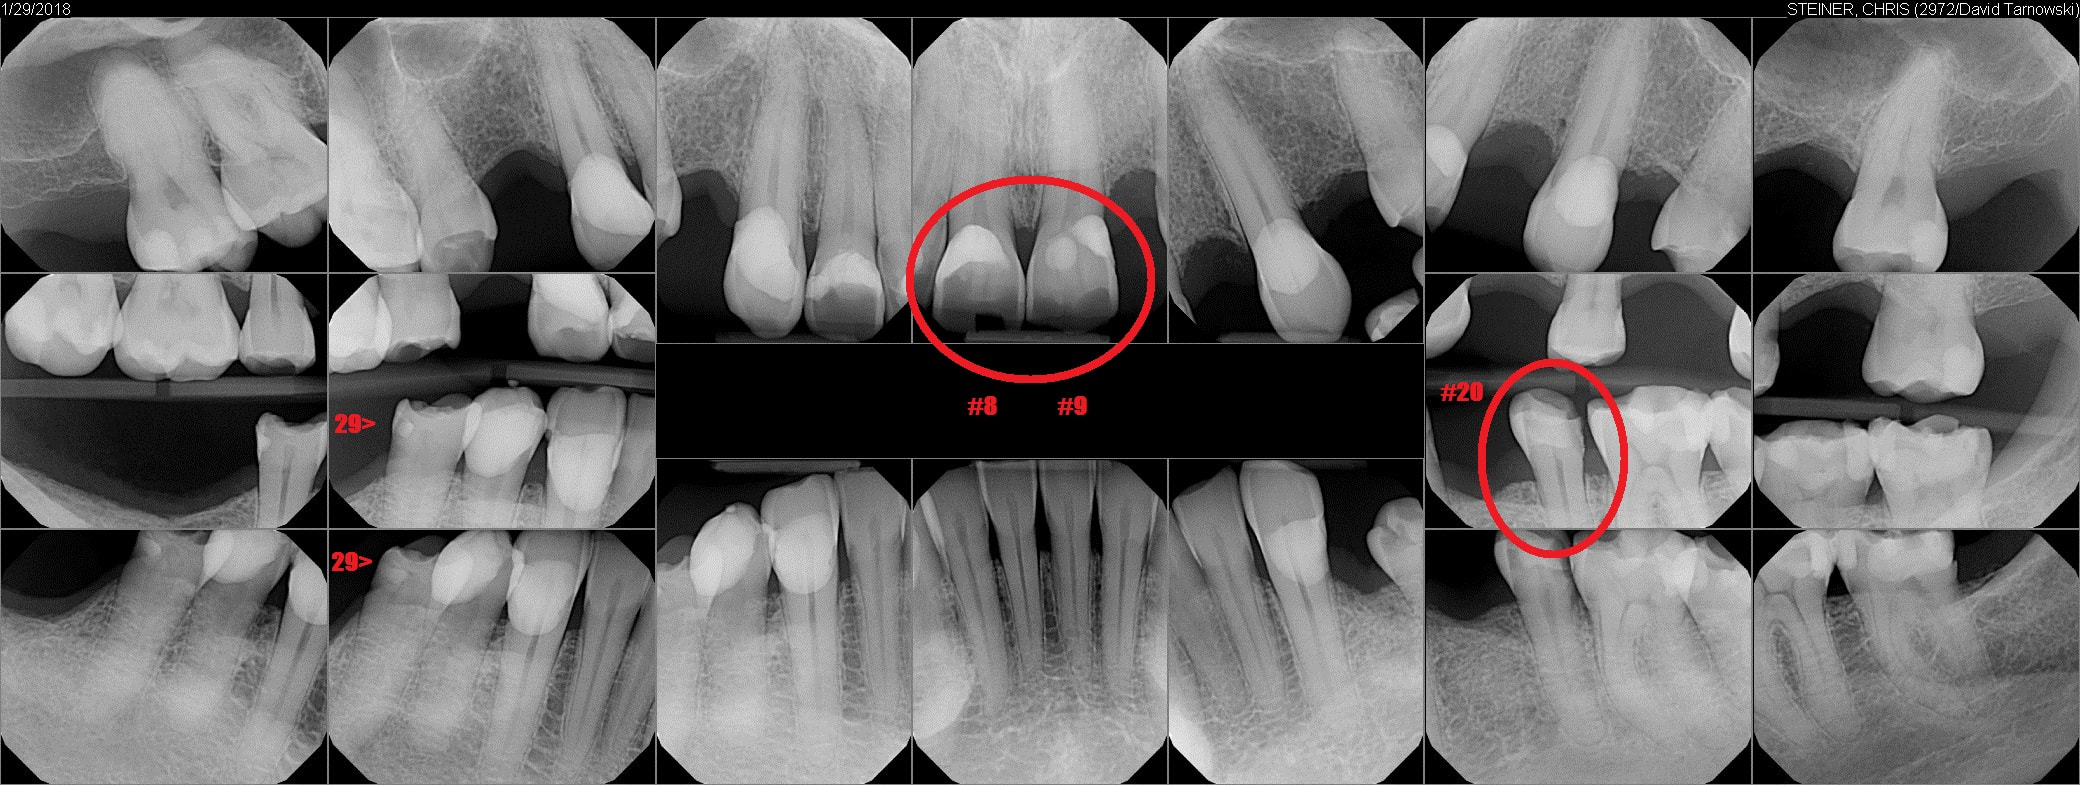 HealthNow Dental (Dr. Tarnowski) X-rays, January 29, 2018 - highlighted